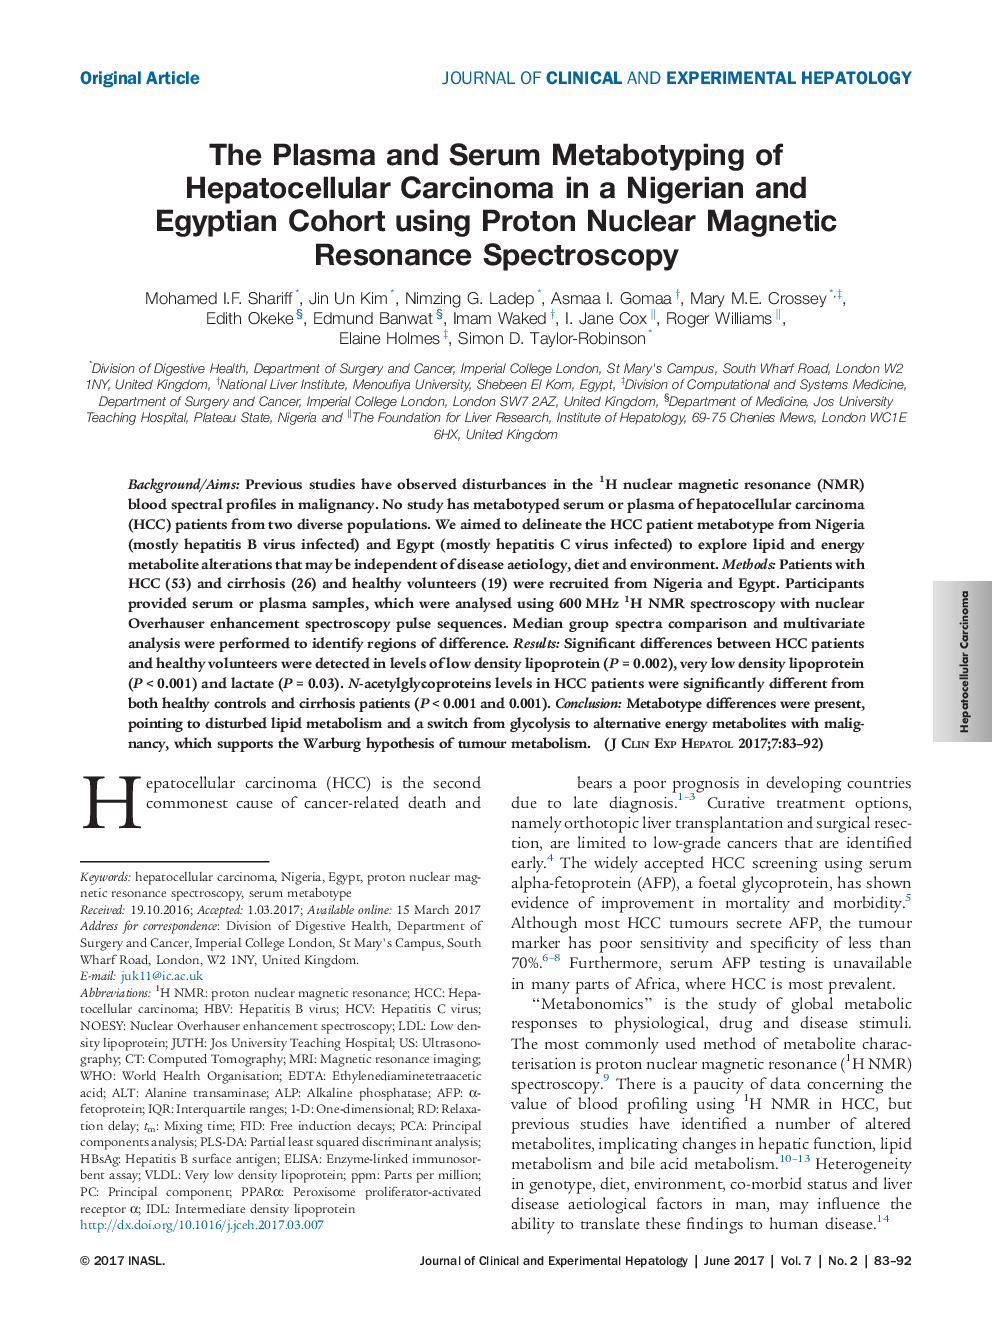 متابوتایپینگ پلاسما و سرم کارسینوم هپاتوسلولار در گروه همگروه نیجریه و مصر با استفاده از اسپکتروسکوپ رزونانس مغناطیسی هسته پروتون 